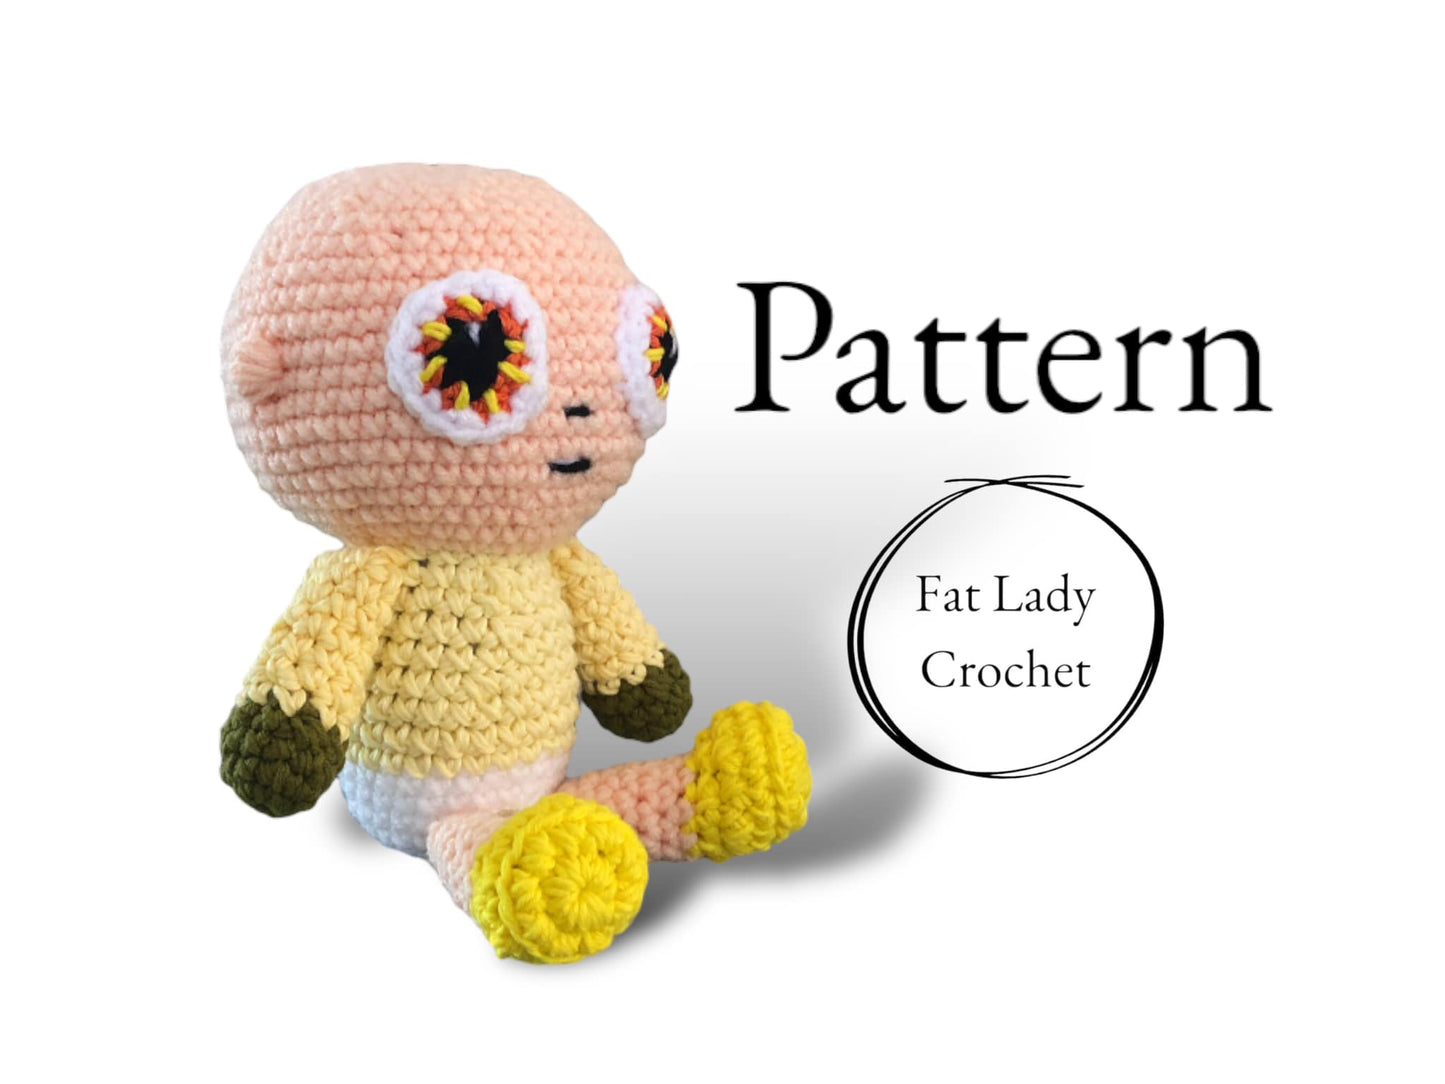 PATTERN: Crochet Baby in Yellow